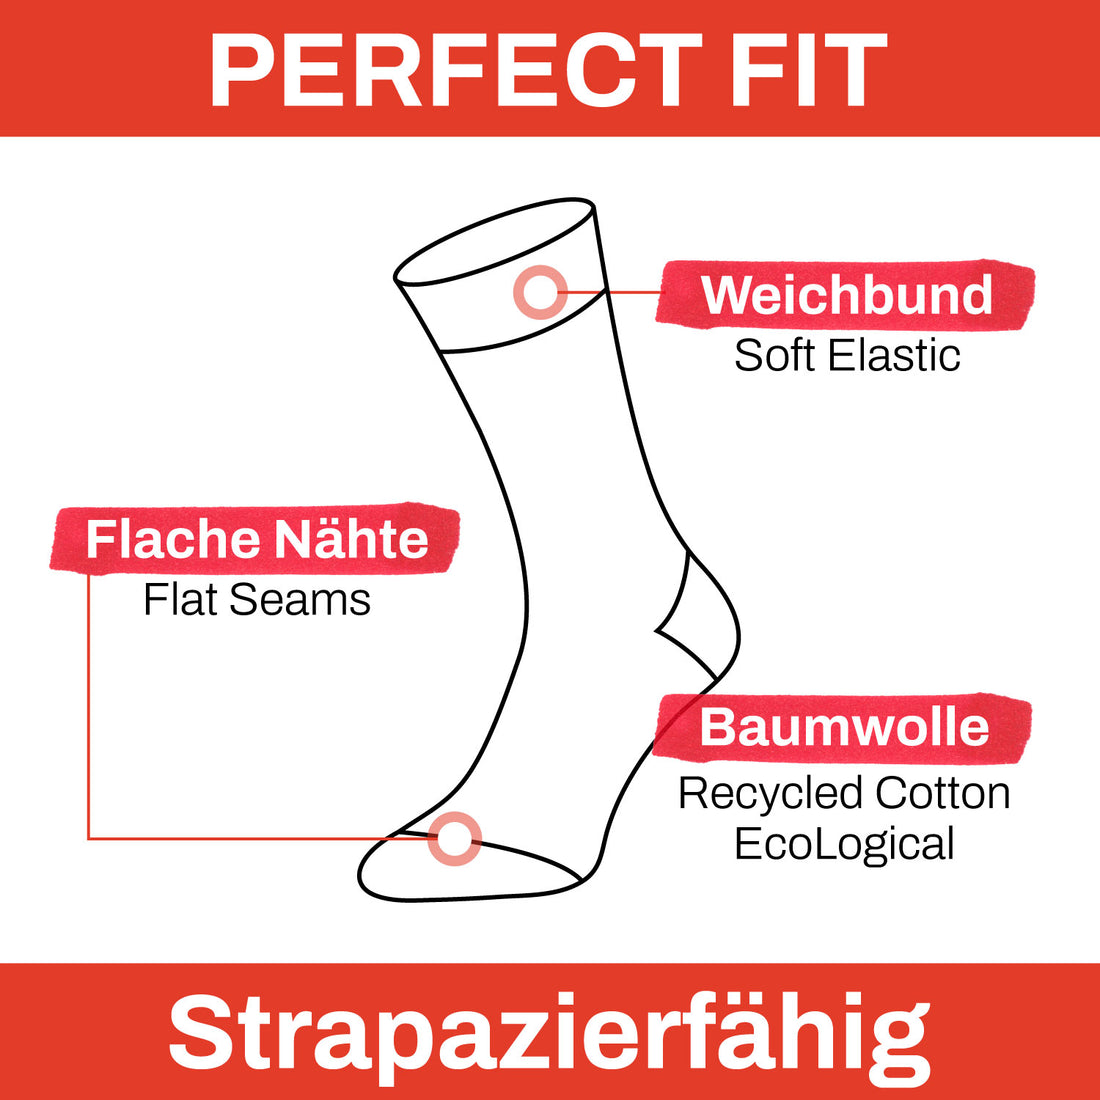 ChiliLifestyle Socken Streifen Design 5 Paar, Damen, Herren, Baumwolle